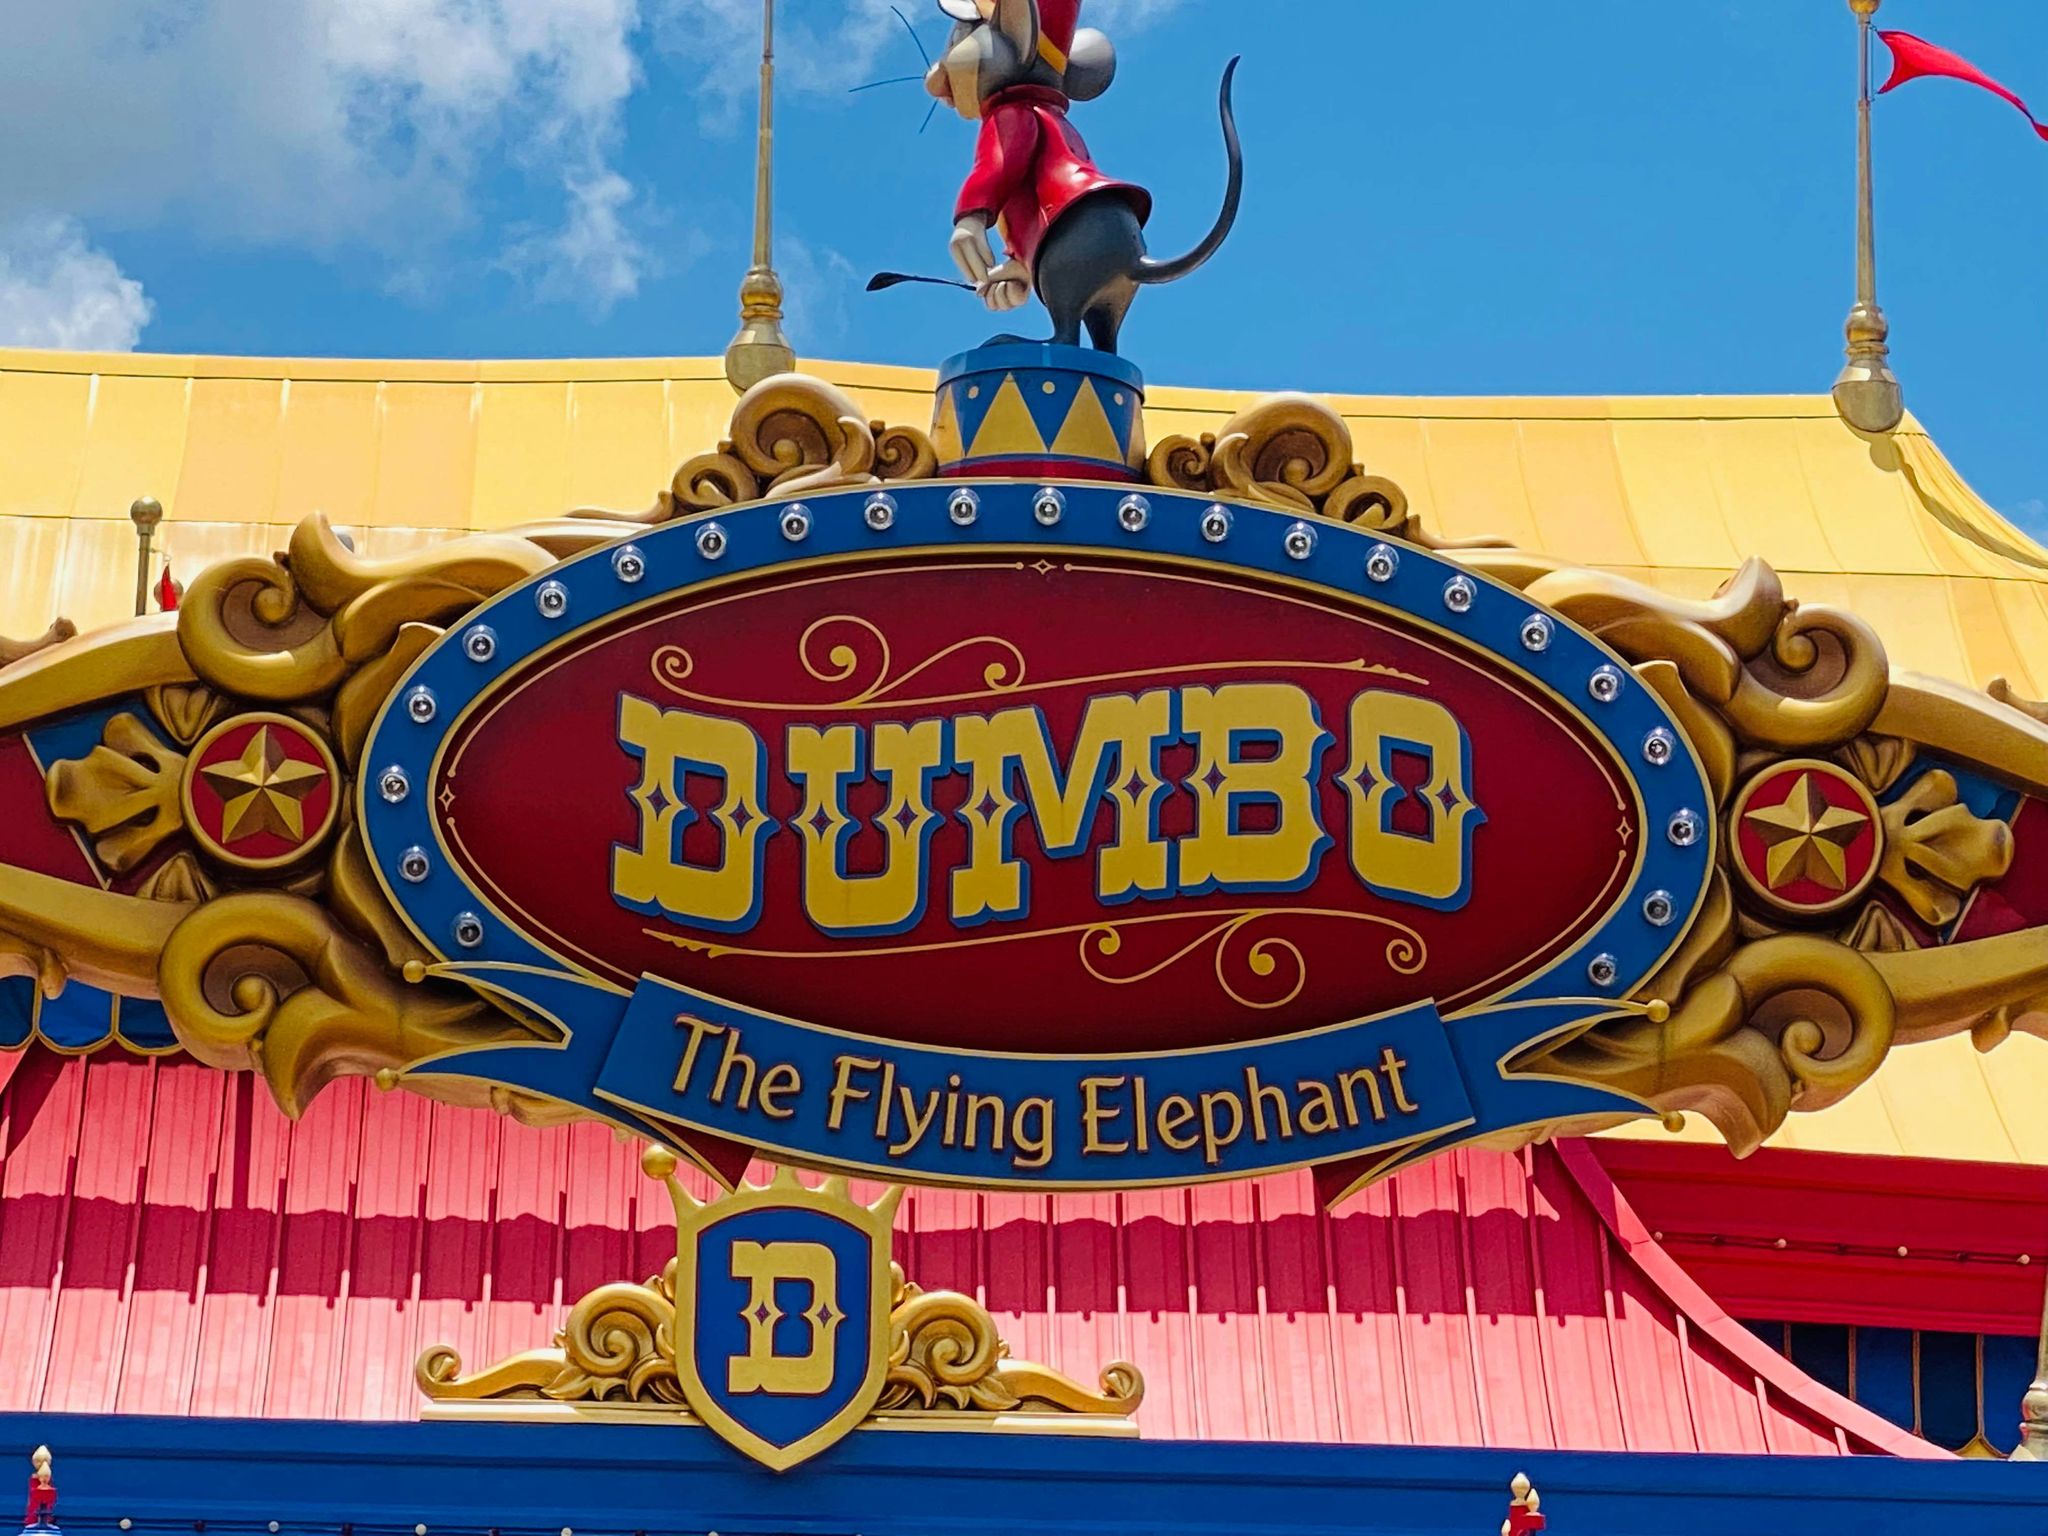 Dumbo play area